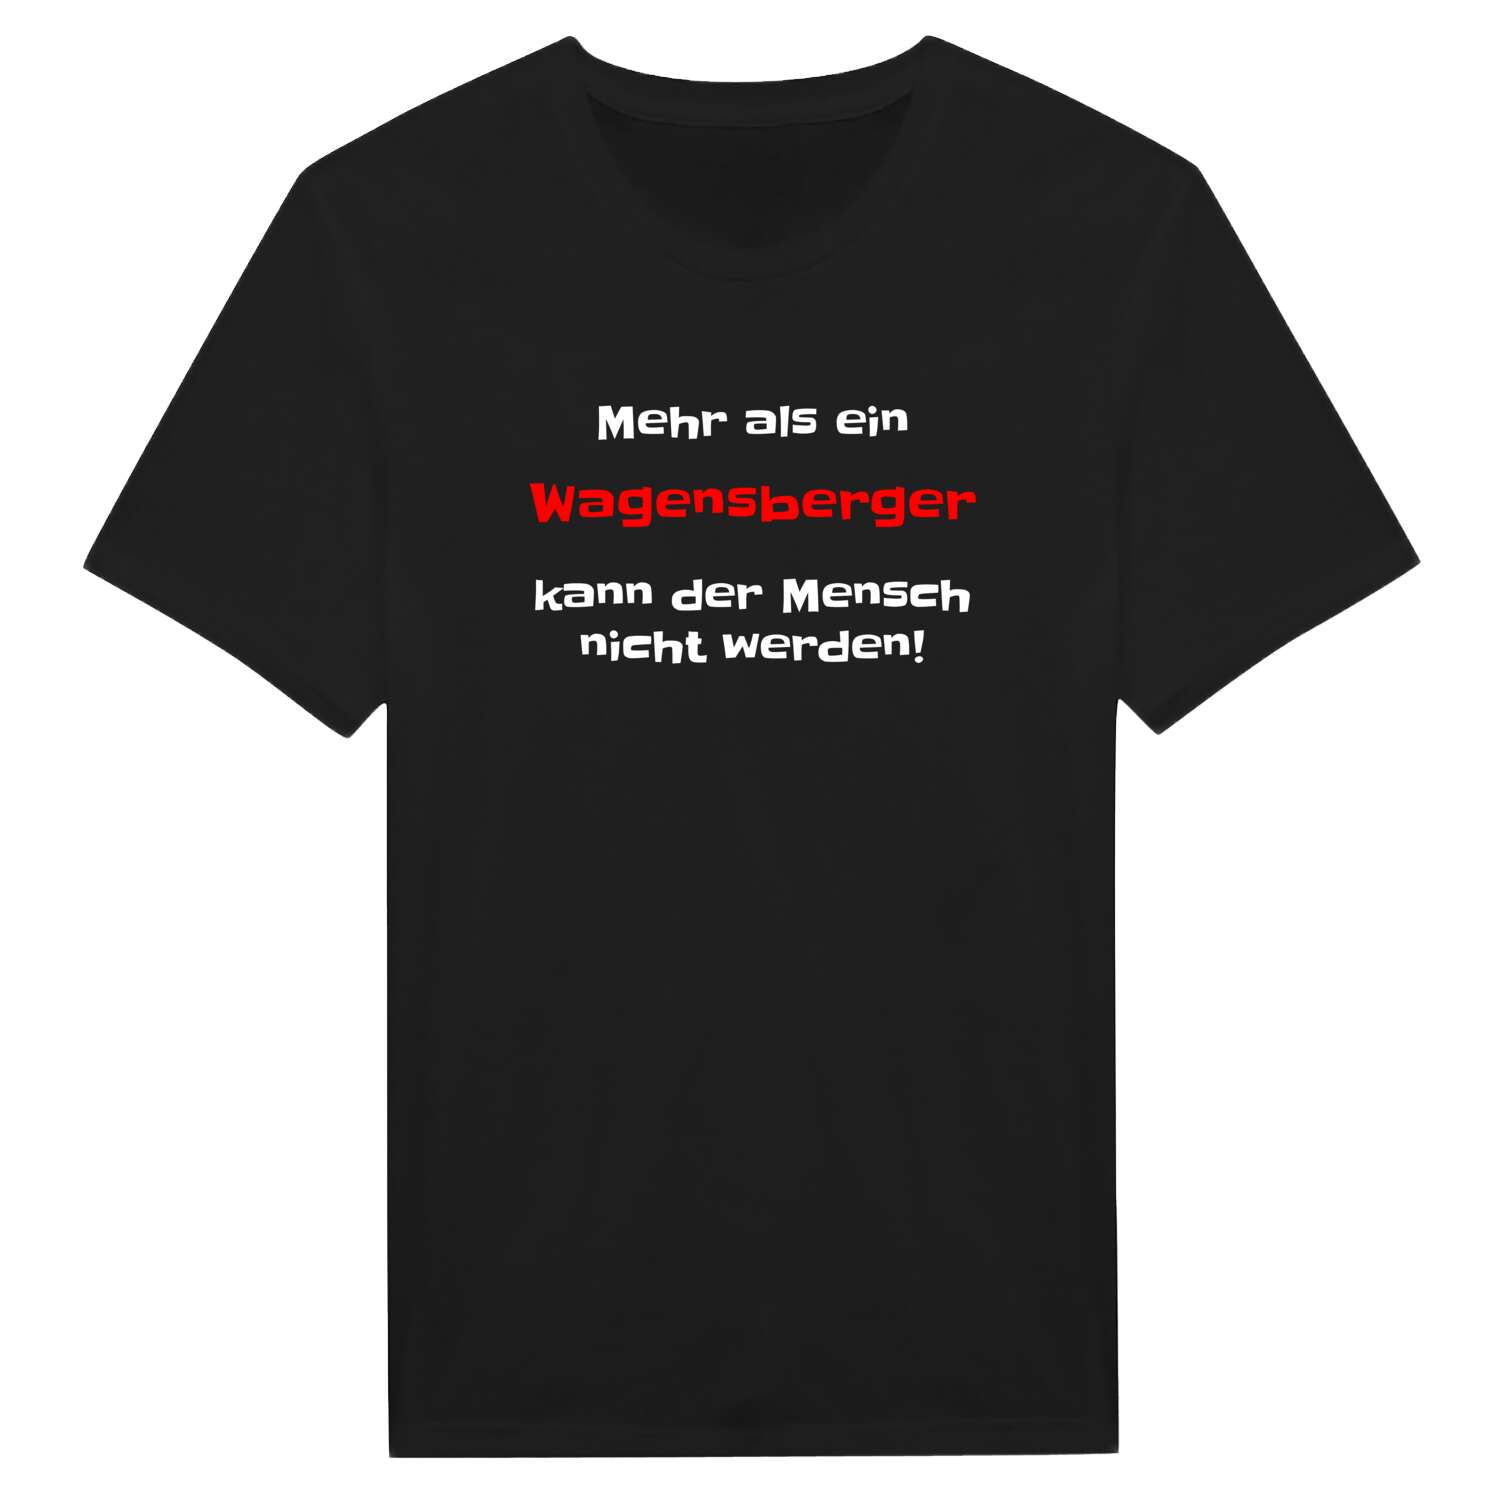 Wagensberg T-Shirt »Mehr als ein«